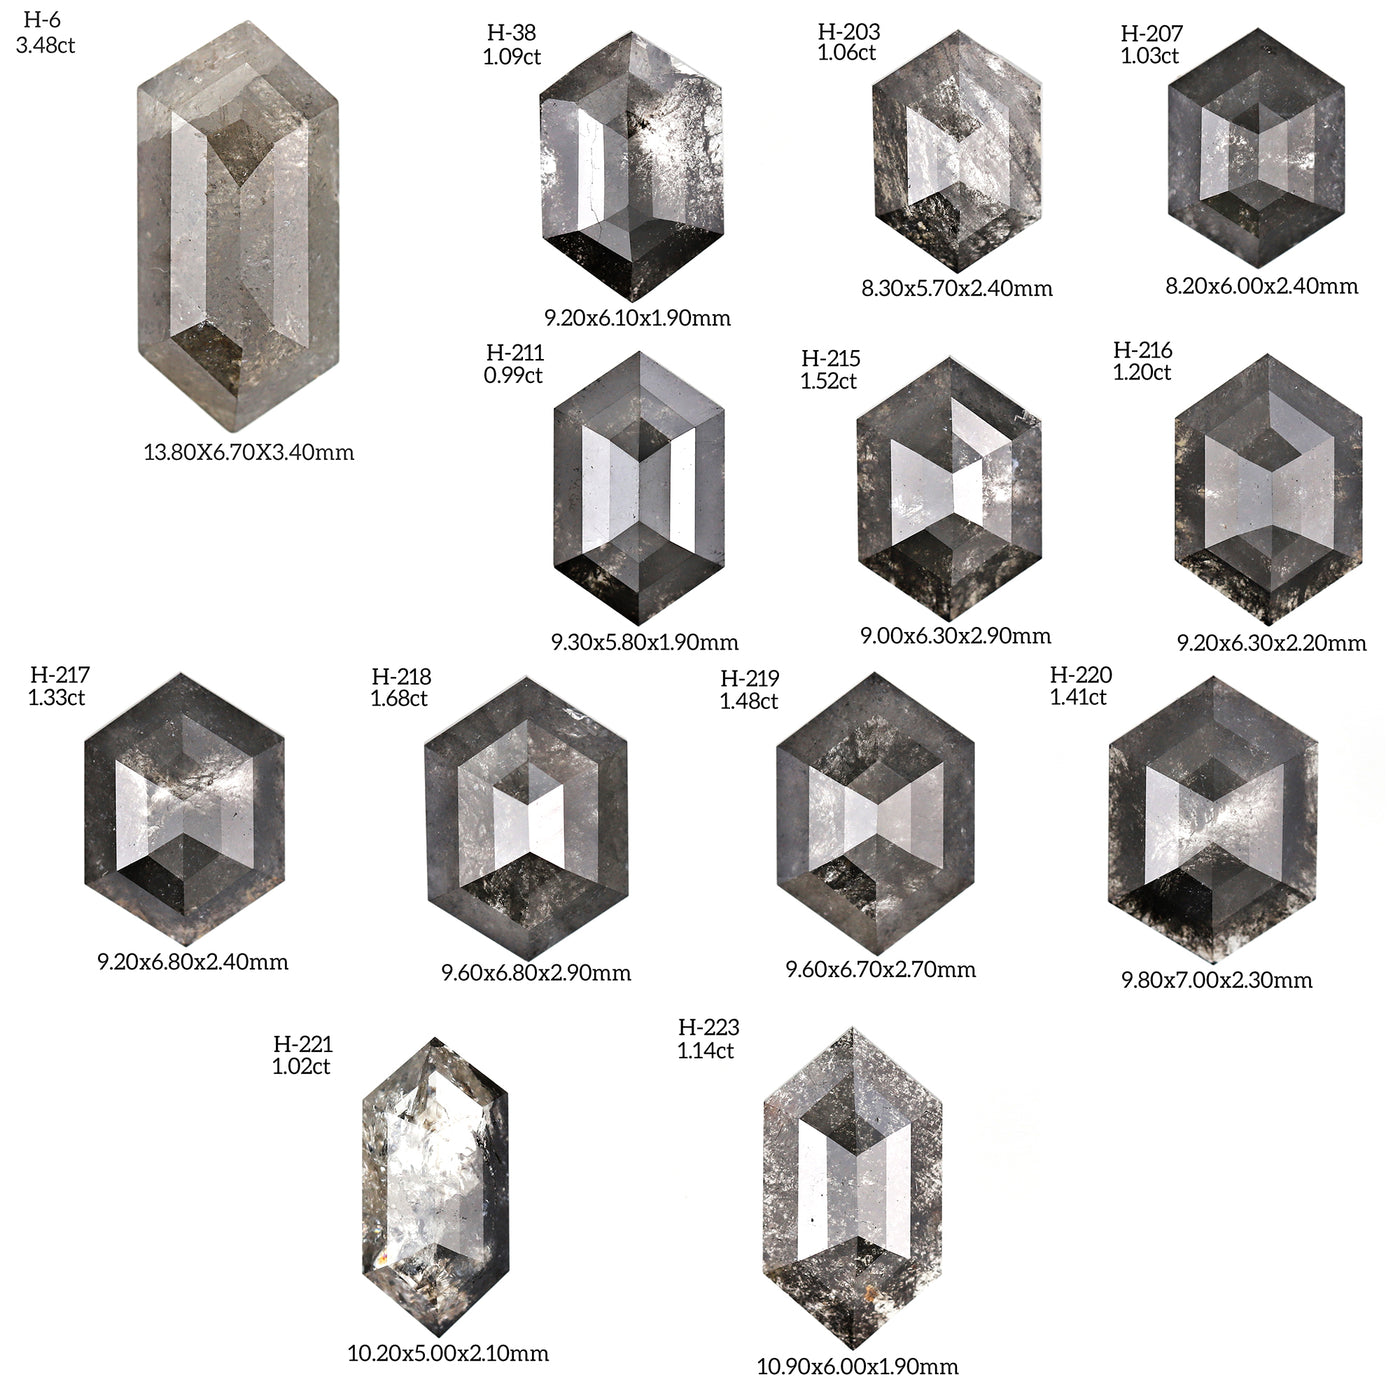 H101 - Salt and pepper hexagon diamond